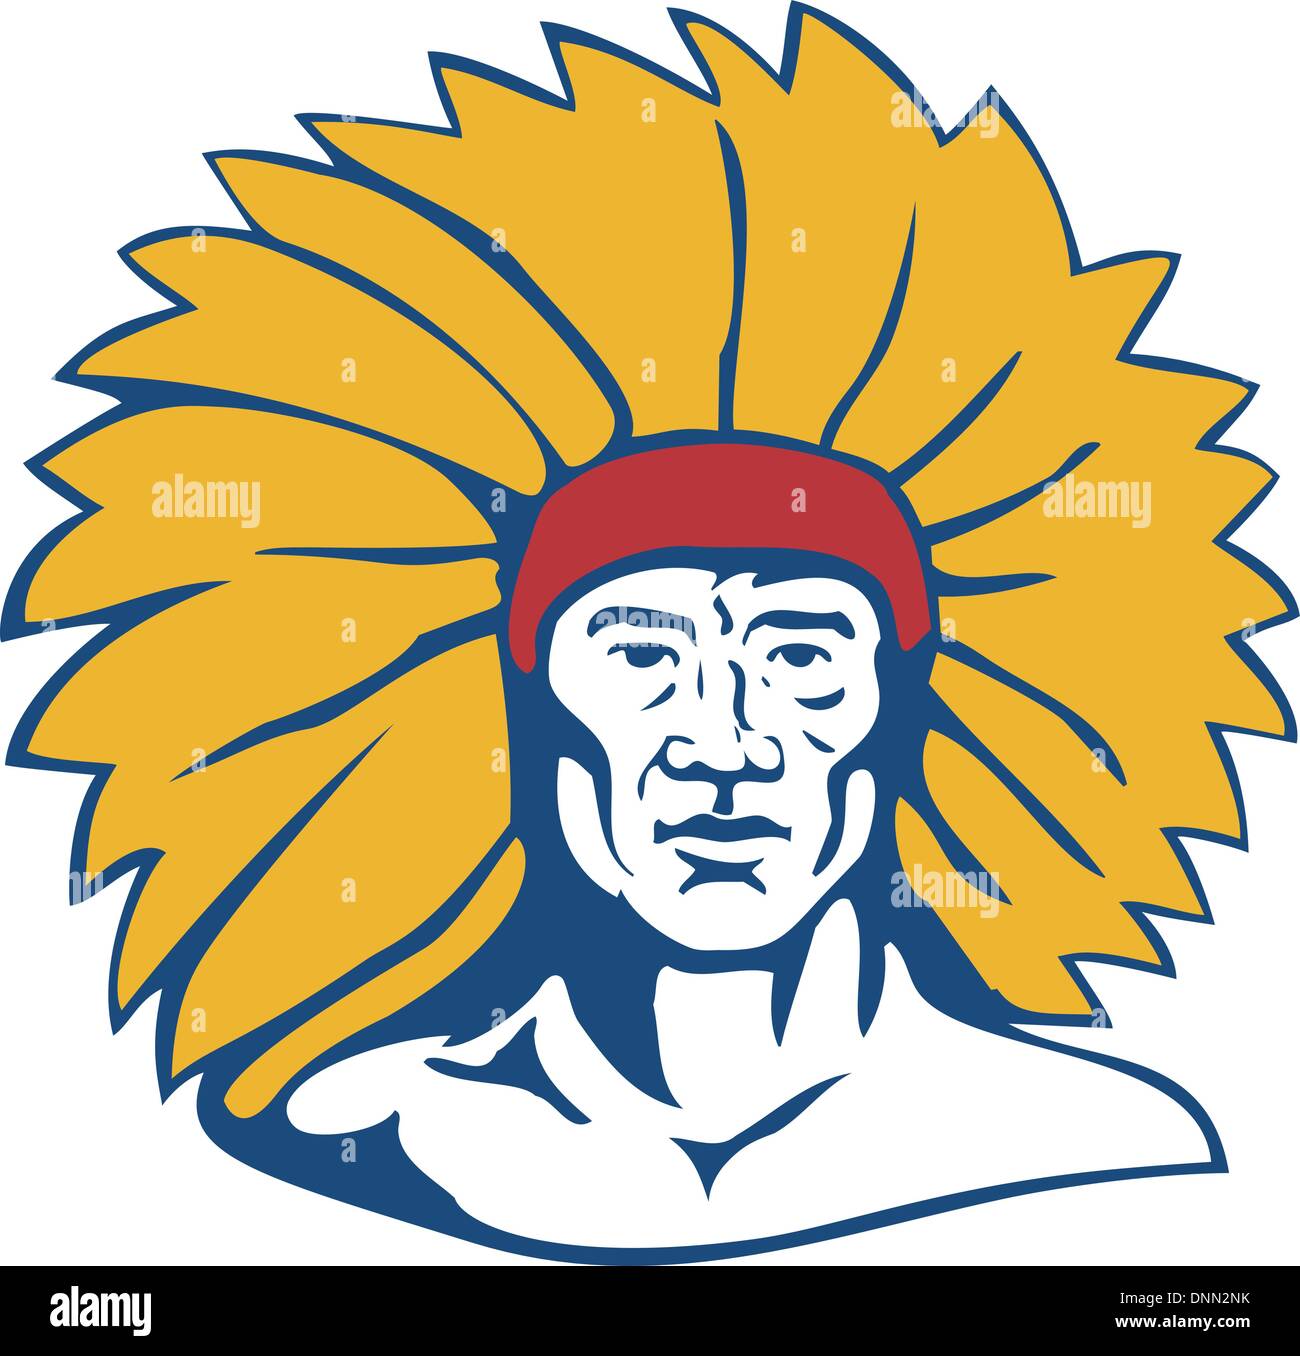 Ilustración de un jefe indígena americano hecho aislado en estilo retro. Ilustración del Vector